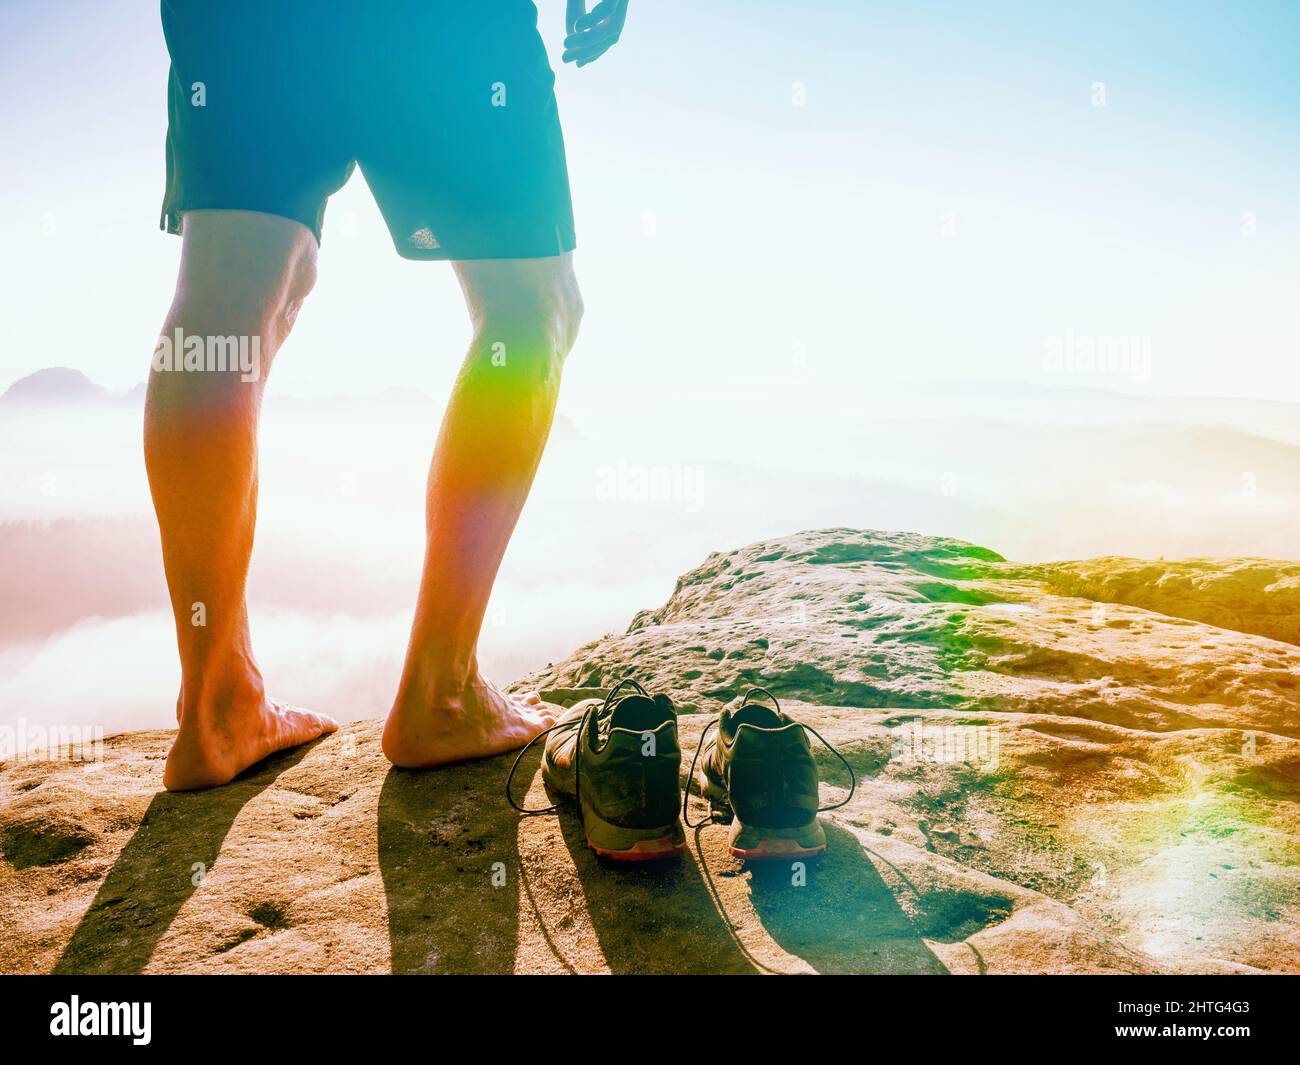 Hombre corredor pies pelados piernas y sudorosos de running y pico rocoso. Misty mañana montañas. Iluminación abstracta, llamaradas coloridas. Foto de stock